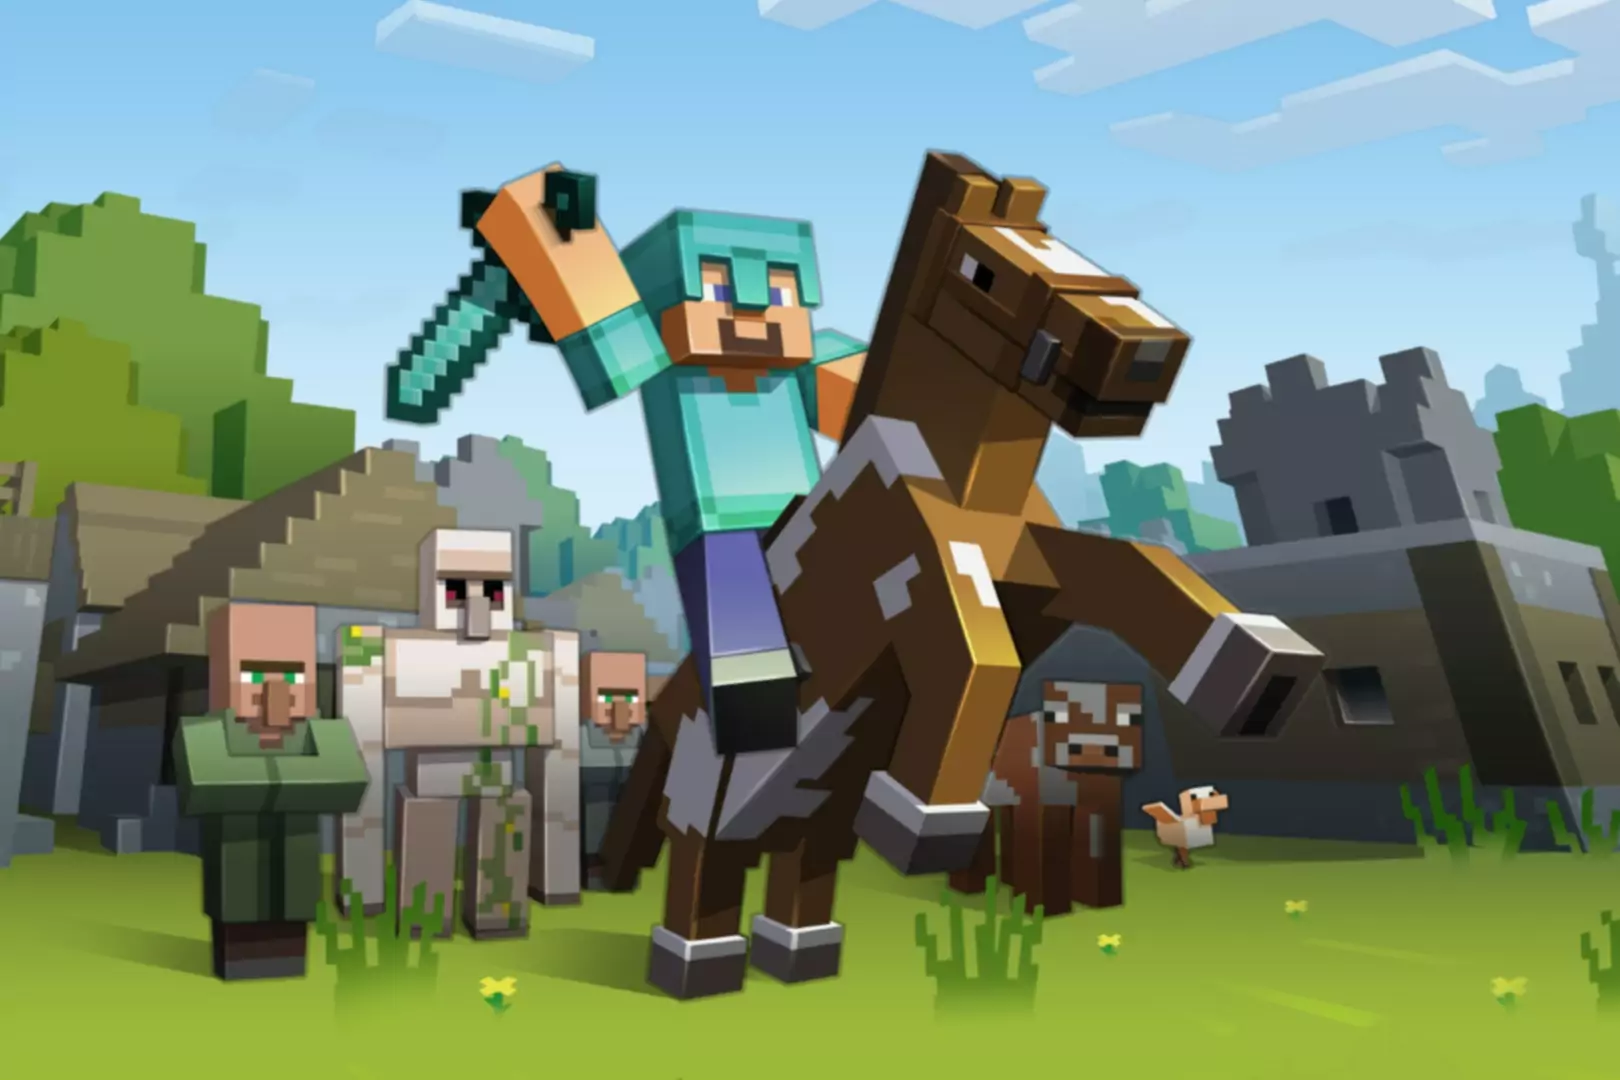 At süren ve kılıç sallayan karakterin yer aldığı Minecraft oyununun ekran görüntüsü